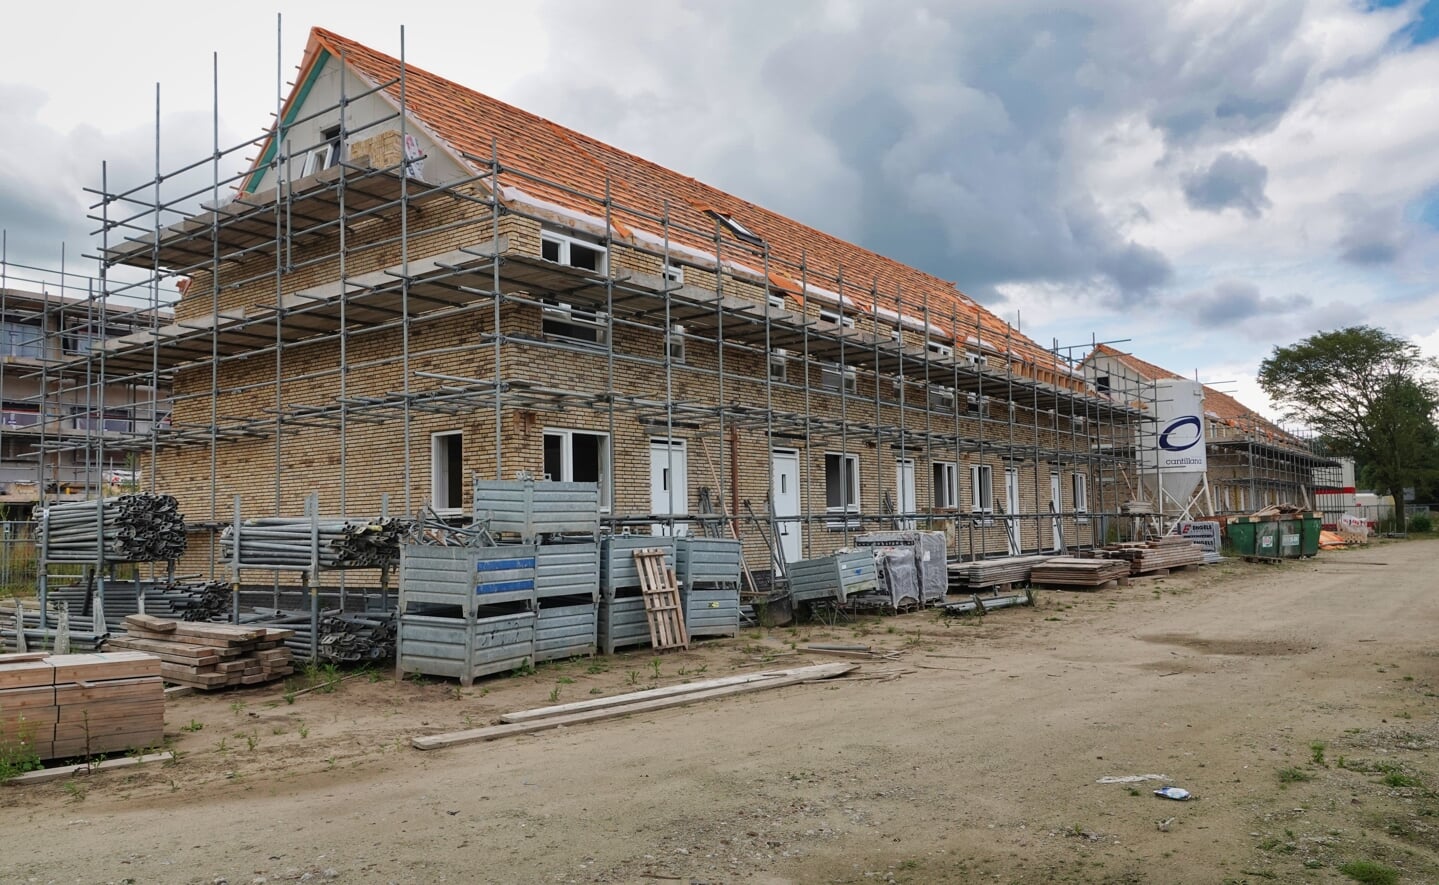 Woningen in aanbouw in Heem van Selis, twee weken geleden. Dit lopende project heeft prioriteit een. (Foto: Albert Stolwijk).